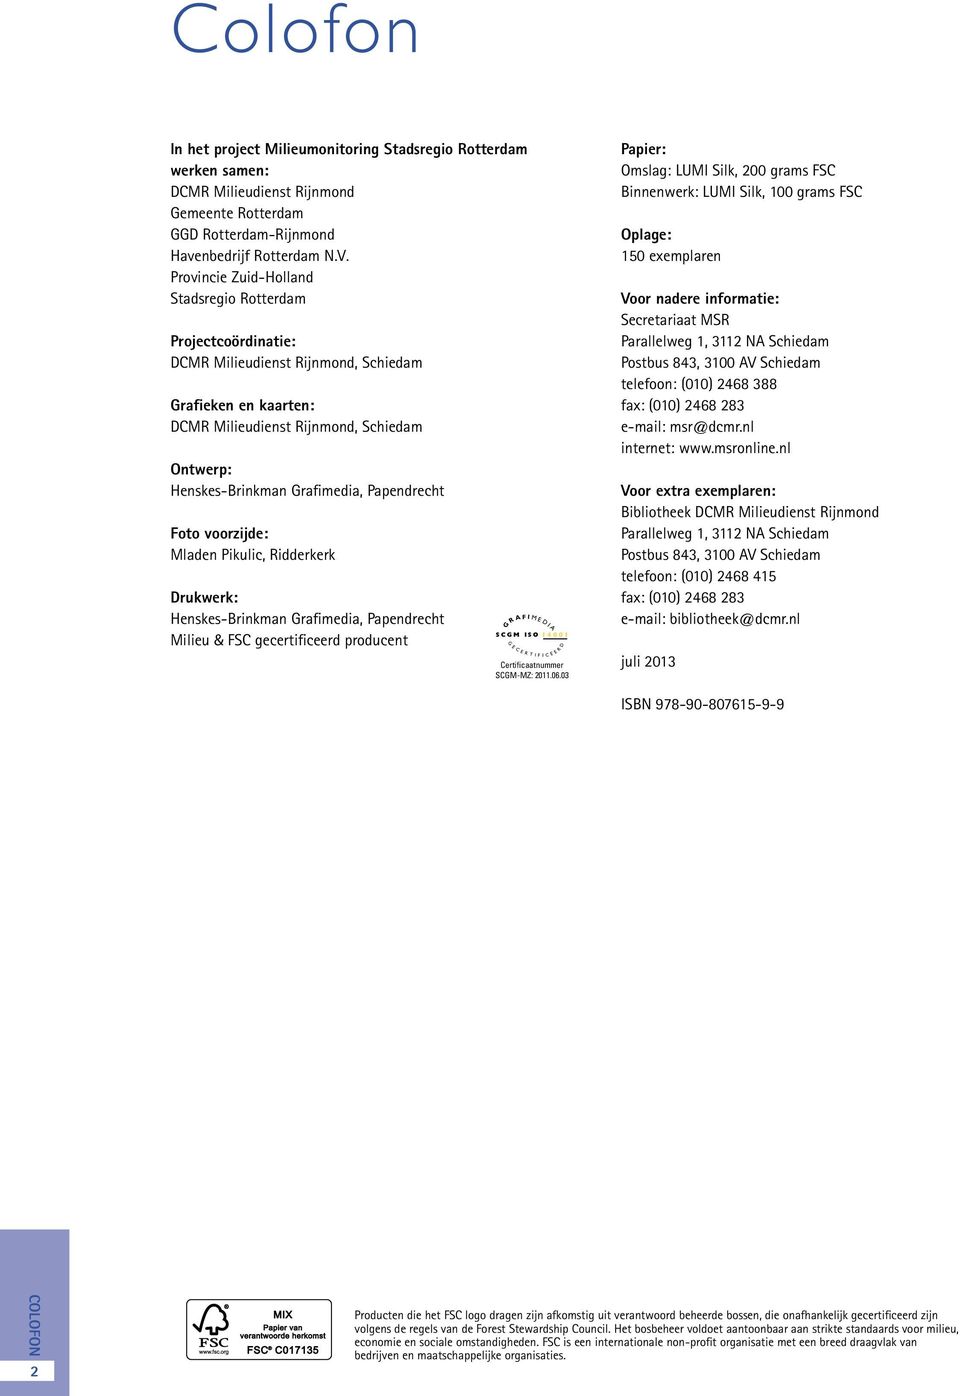 Papendrecht Foto voorzijde: Mladen Pikulic, Ridderkerk Drukwerk: Henskes-Brinkman Grafimedia, Papendrecht Milieu & FSC gecertificeerd producent G R A F SCGM ISO 14001 G E C E R I M E D T I